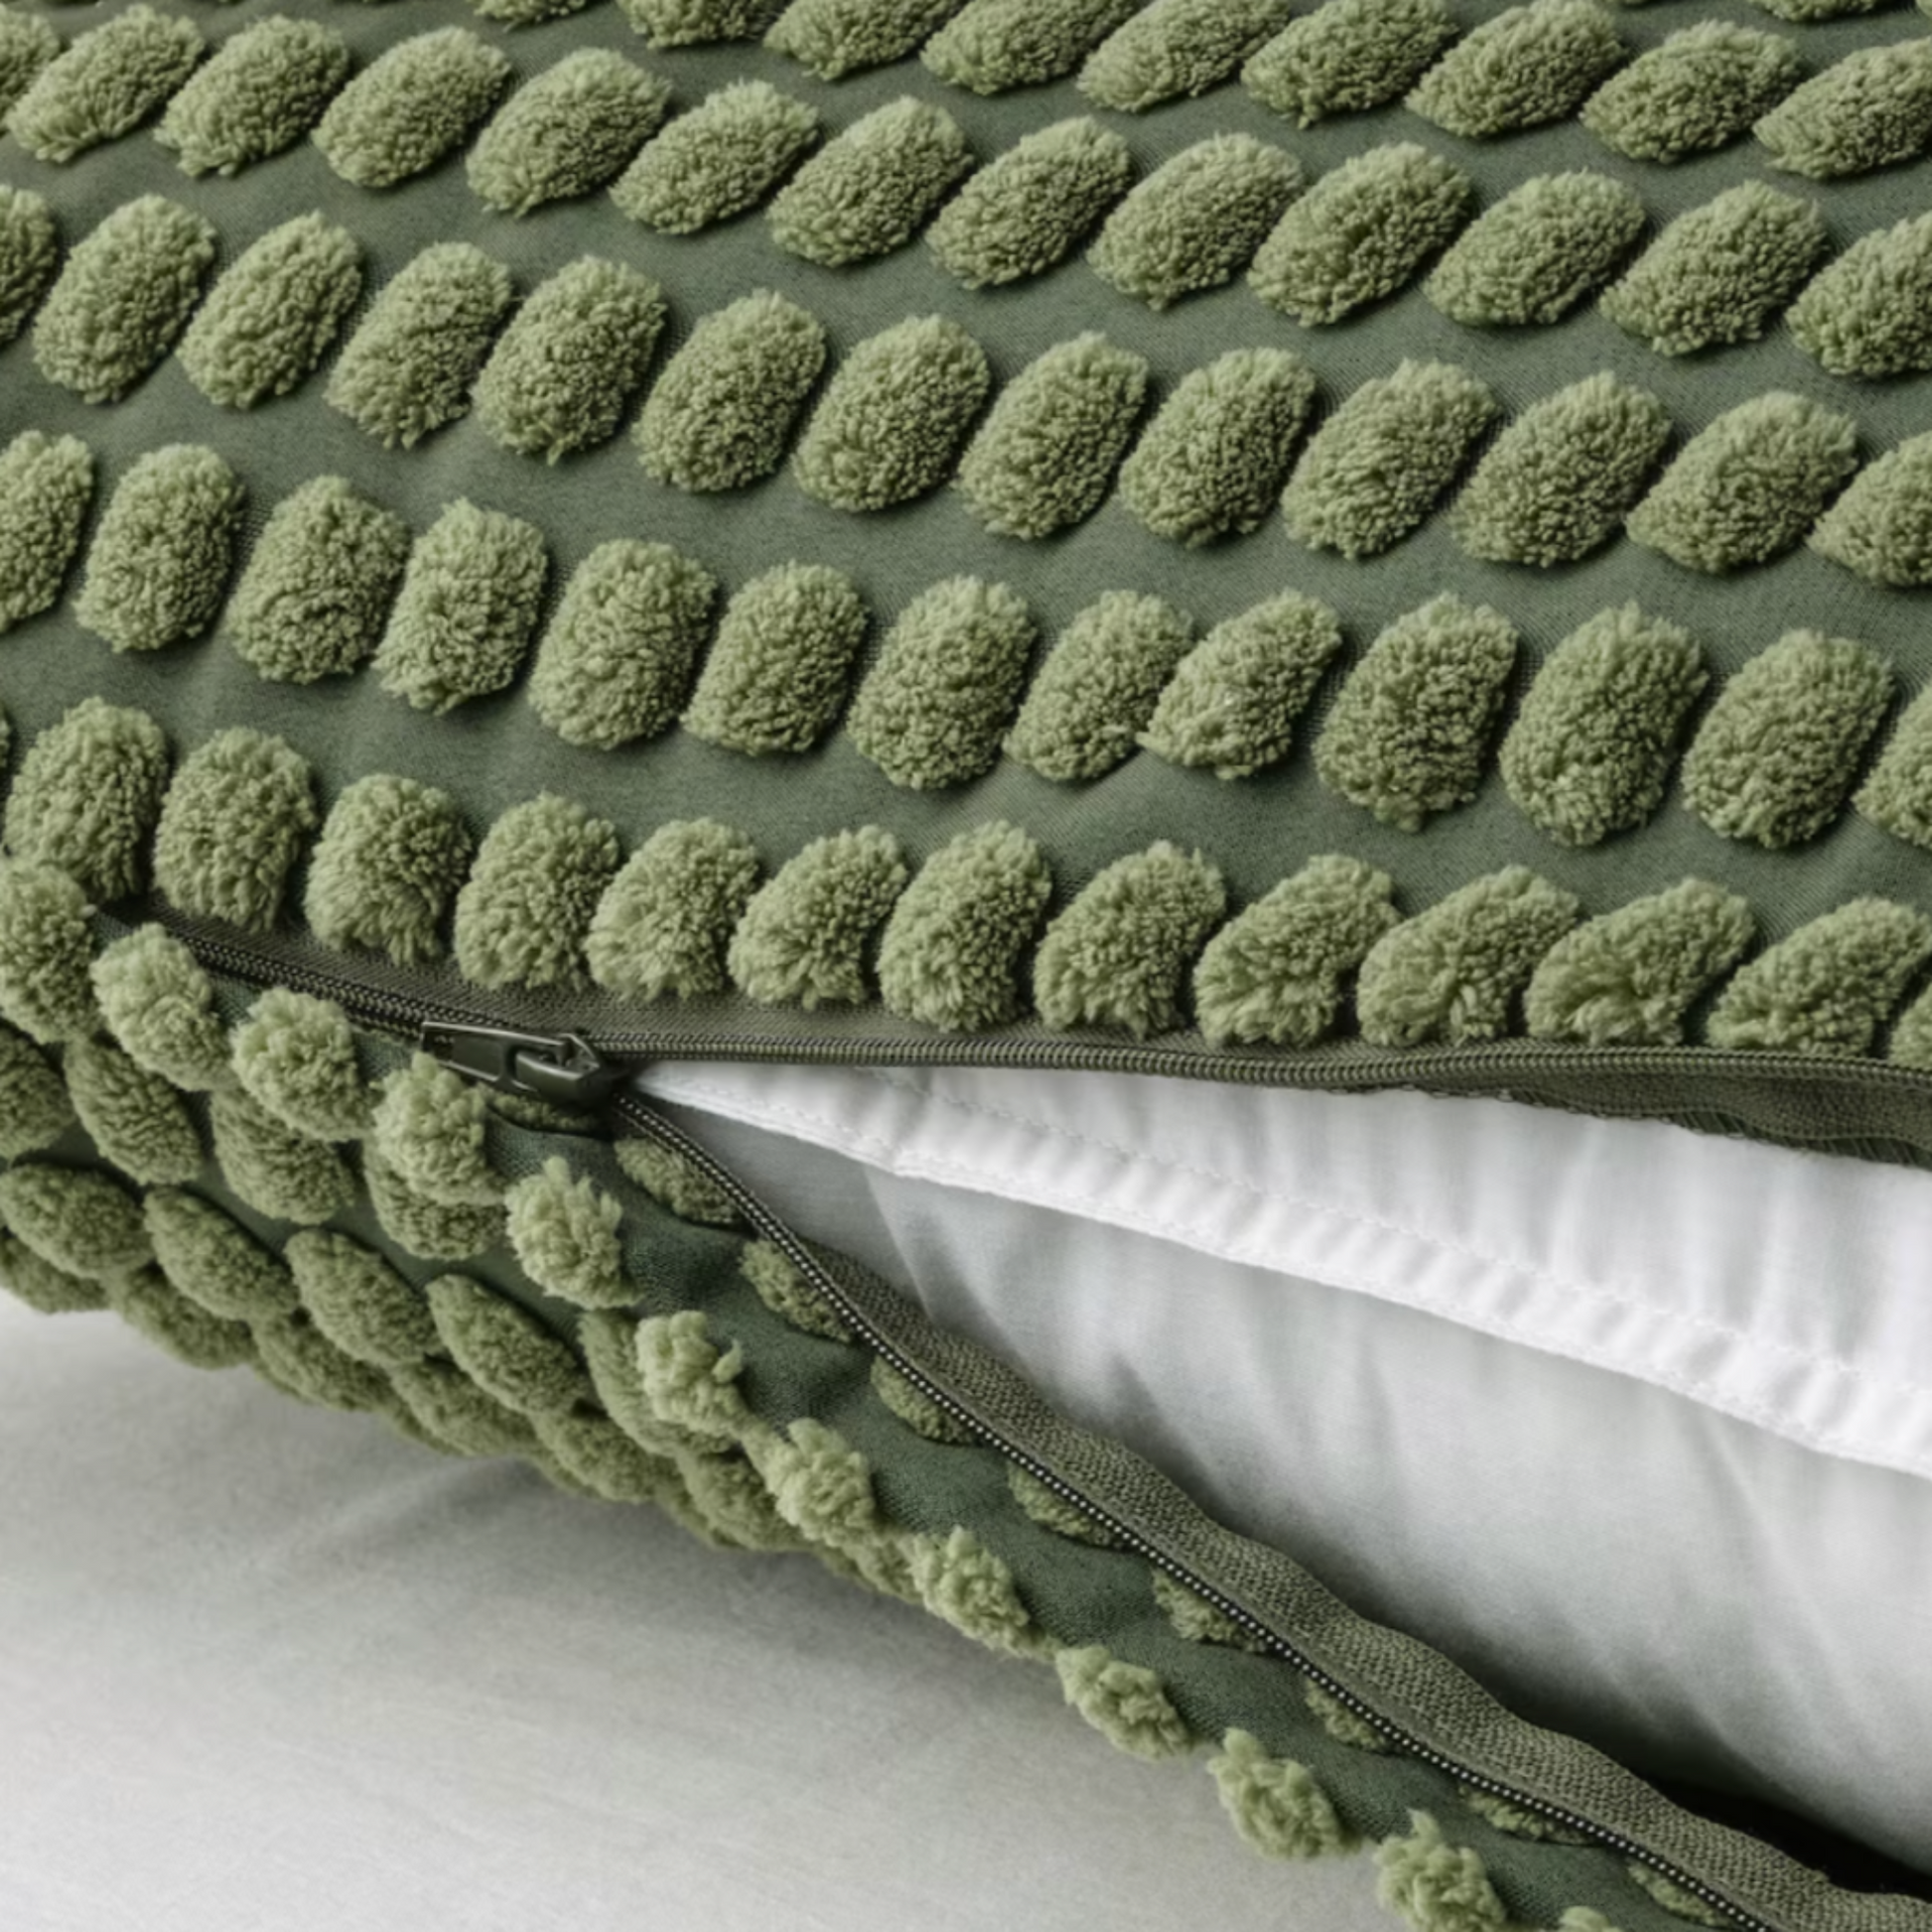 Ikea Svartpoppel Cushion Cover 65x65cm, Forest Green (8581679284511)